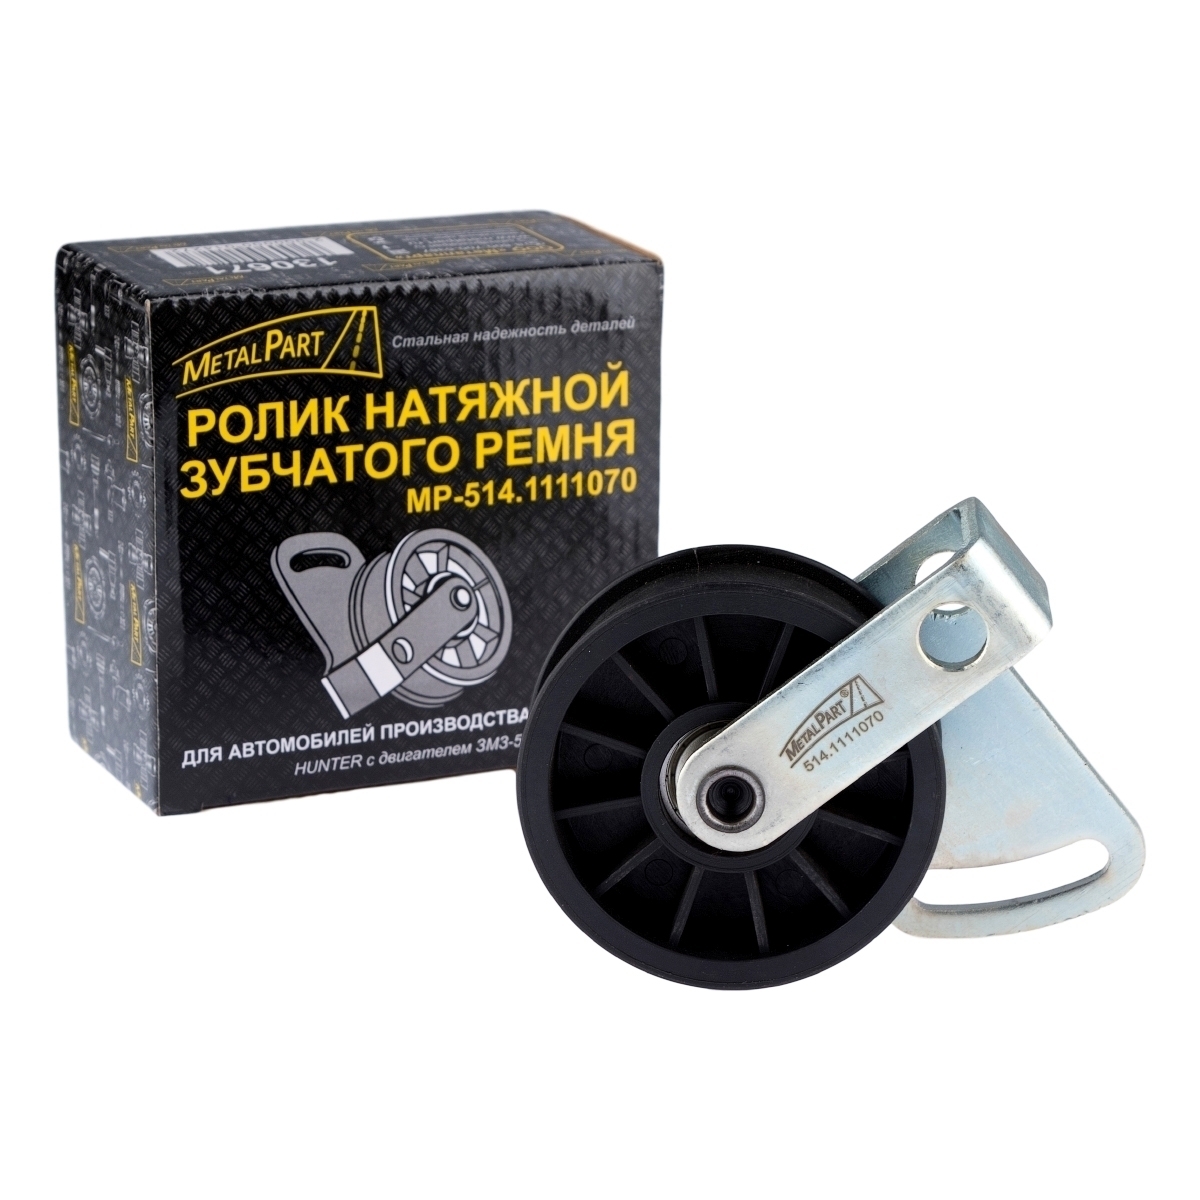 Ролик натяжной зубчатого ремня "MetalPart" для автомобилей УАЗ HUNTER с двигателем ЗМЗ-514